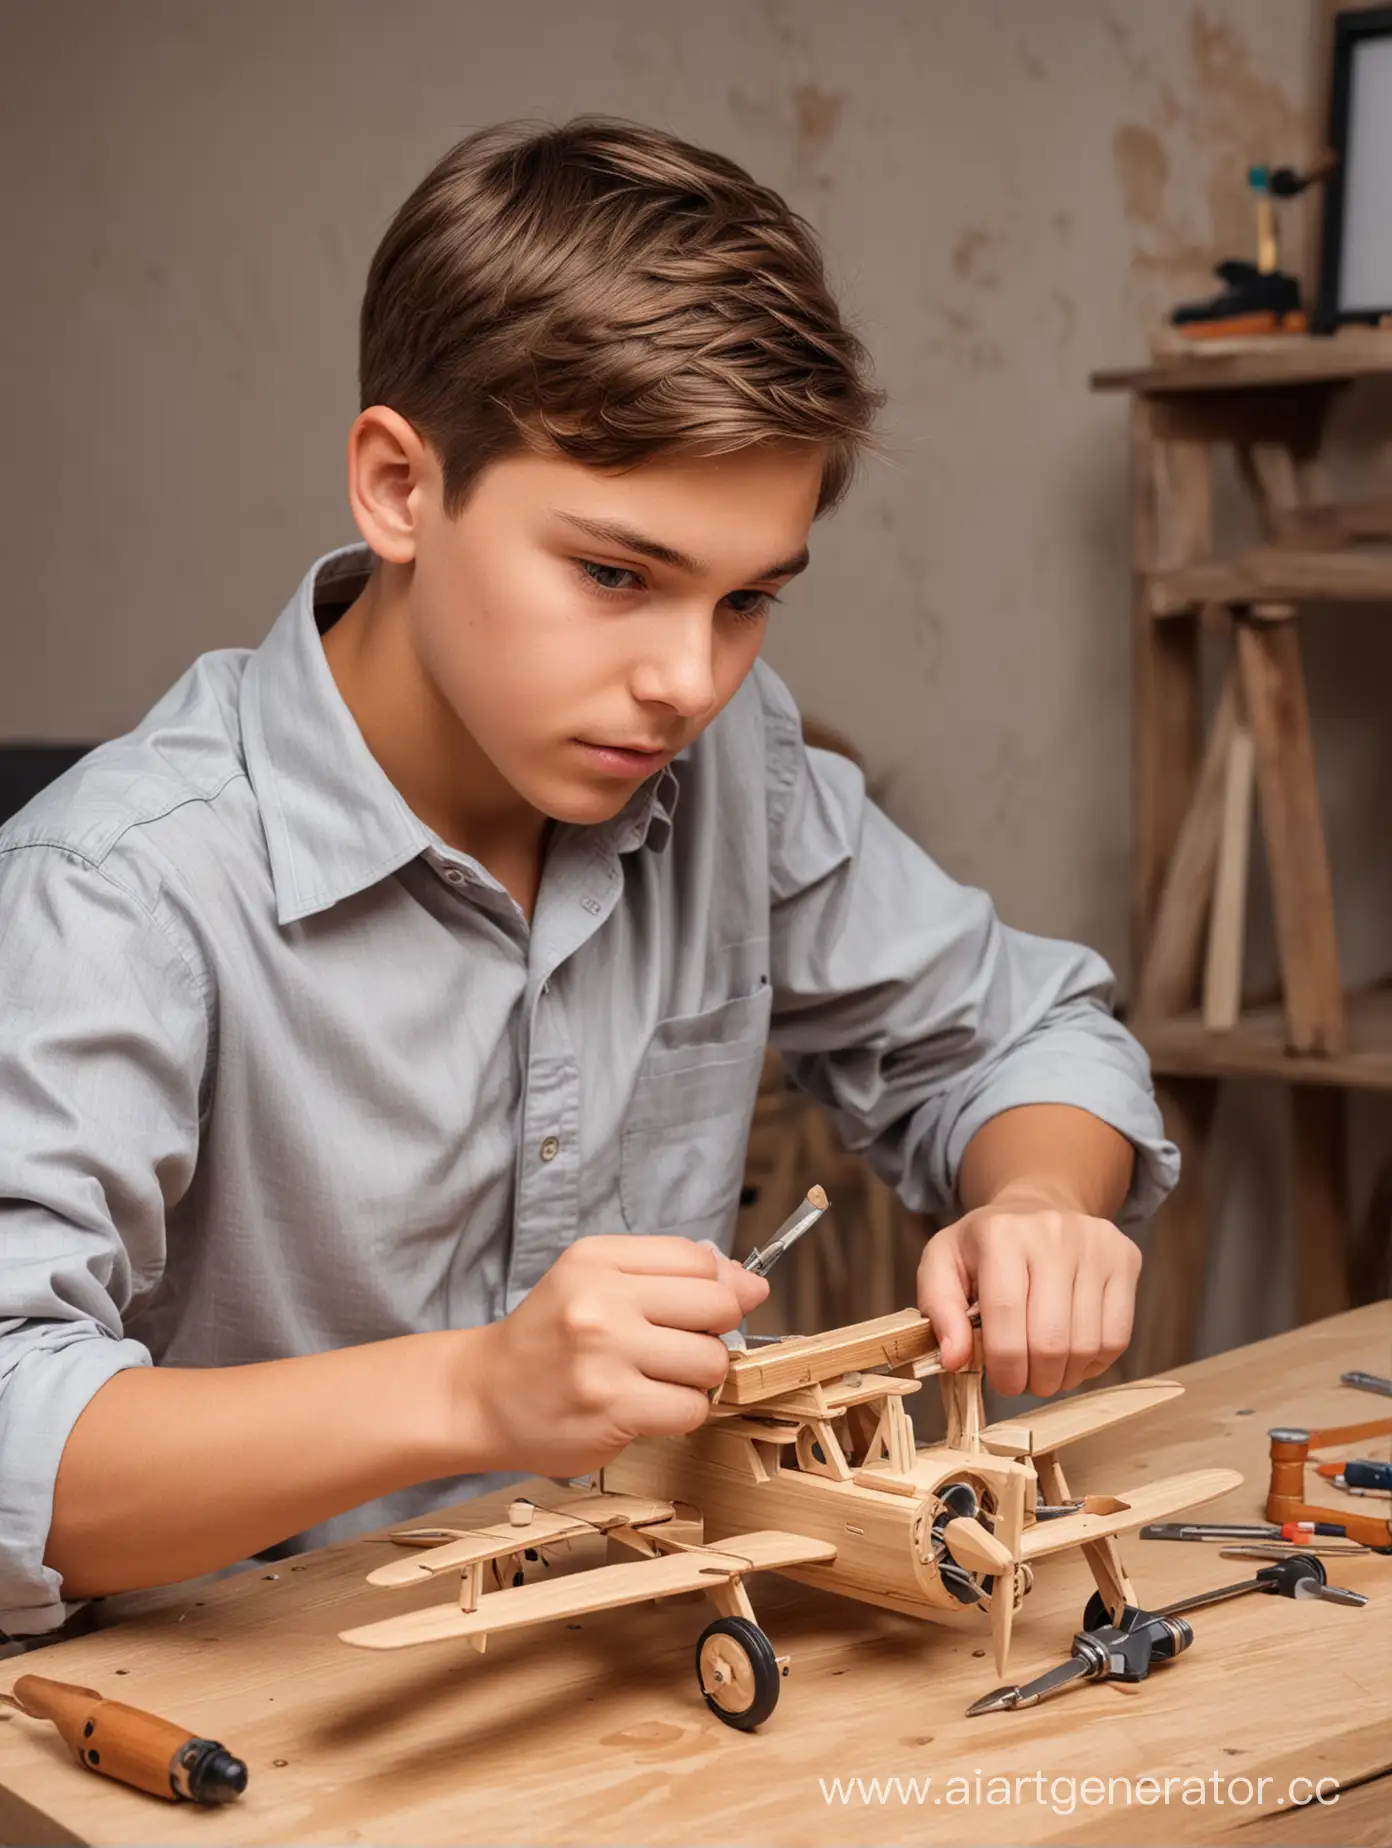 Молодой человек возраста 12 лет собирающий самолётик из деревянных деталей с отвёрткой в руке